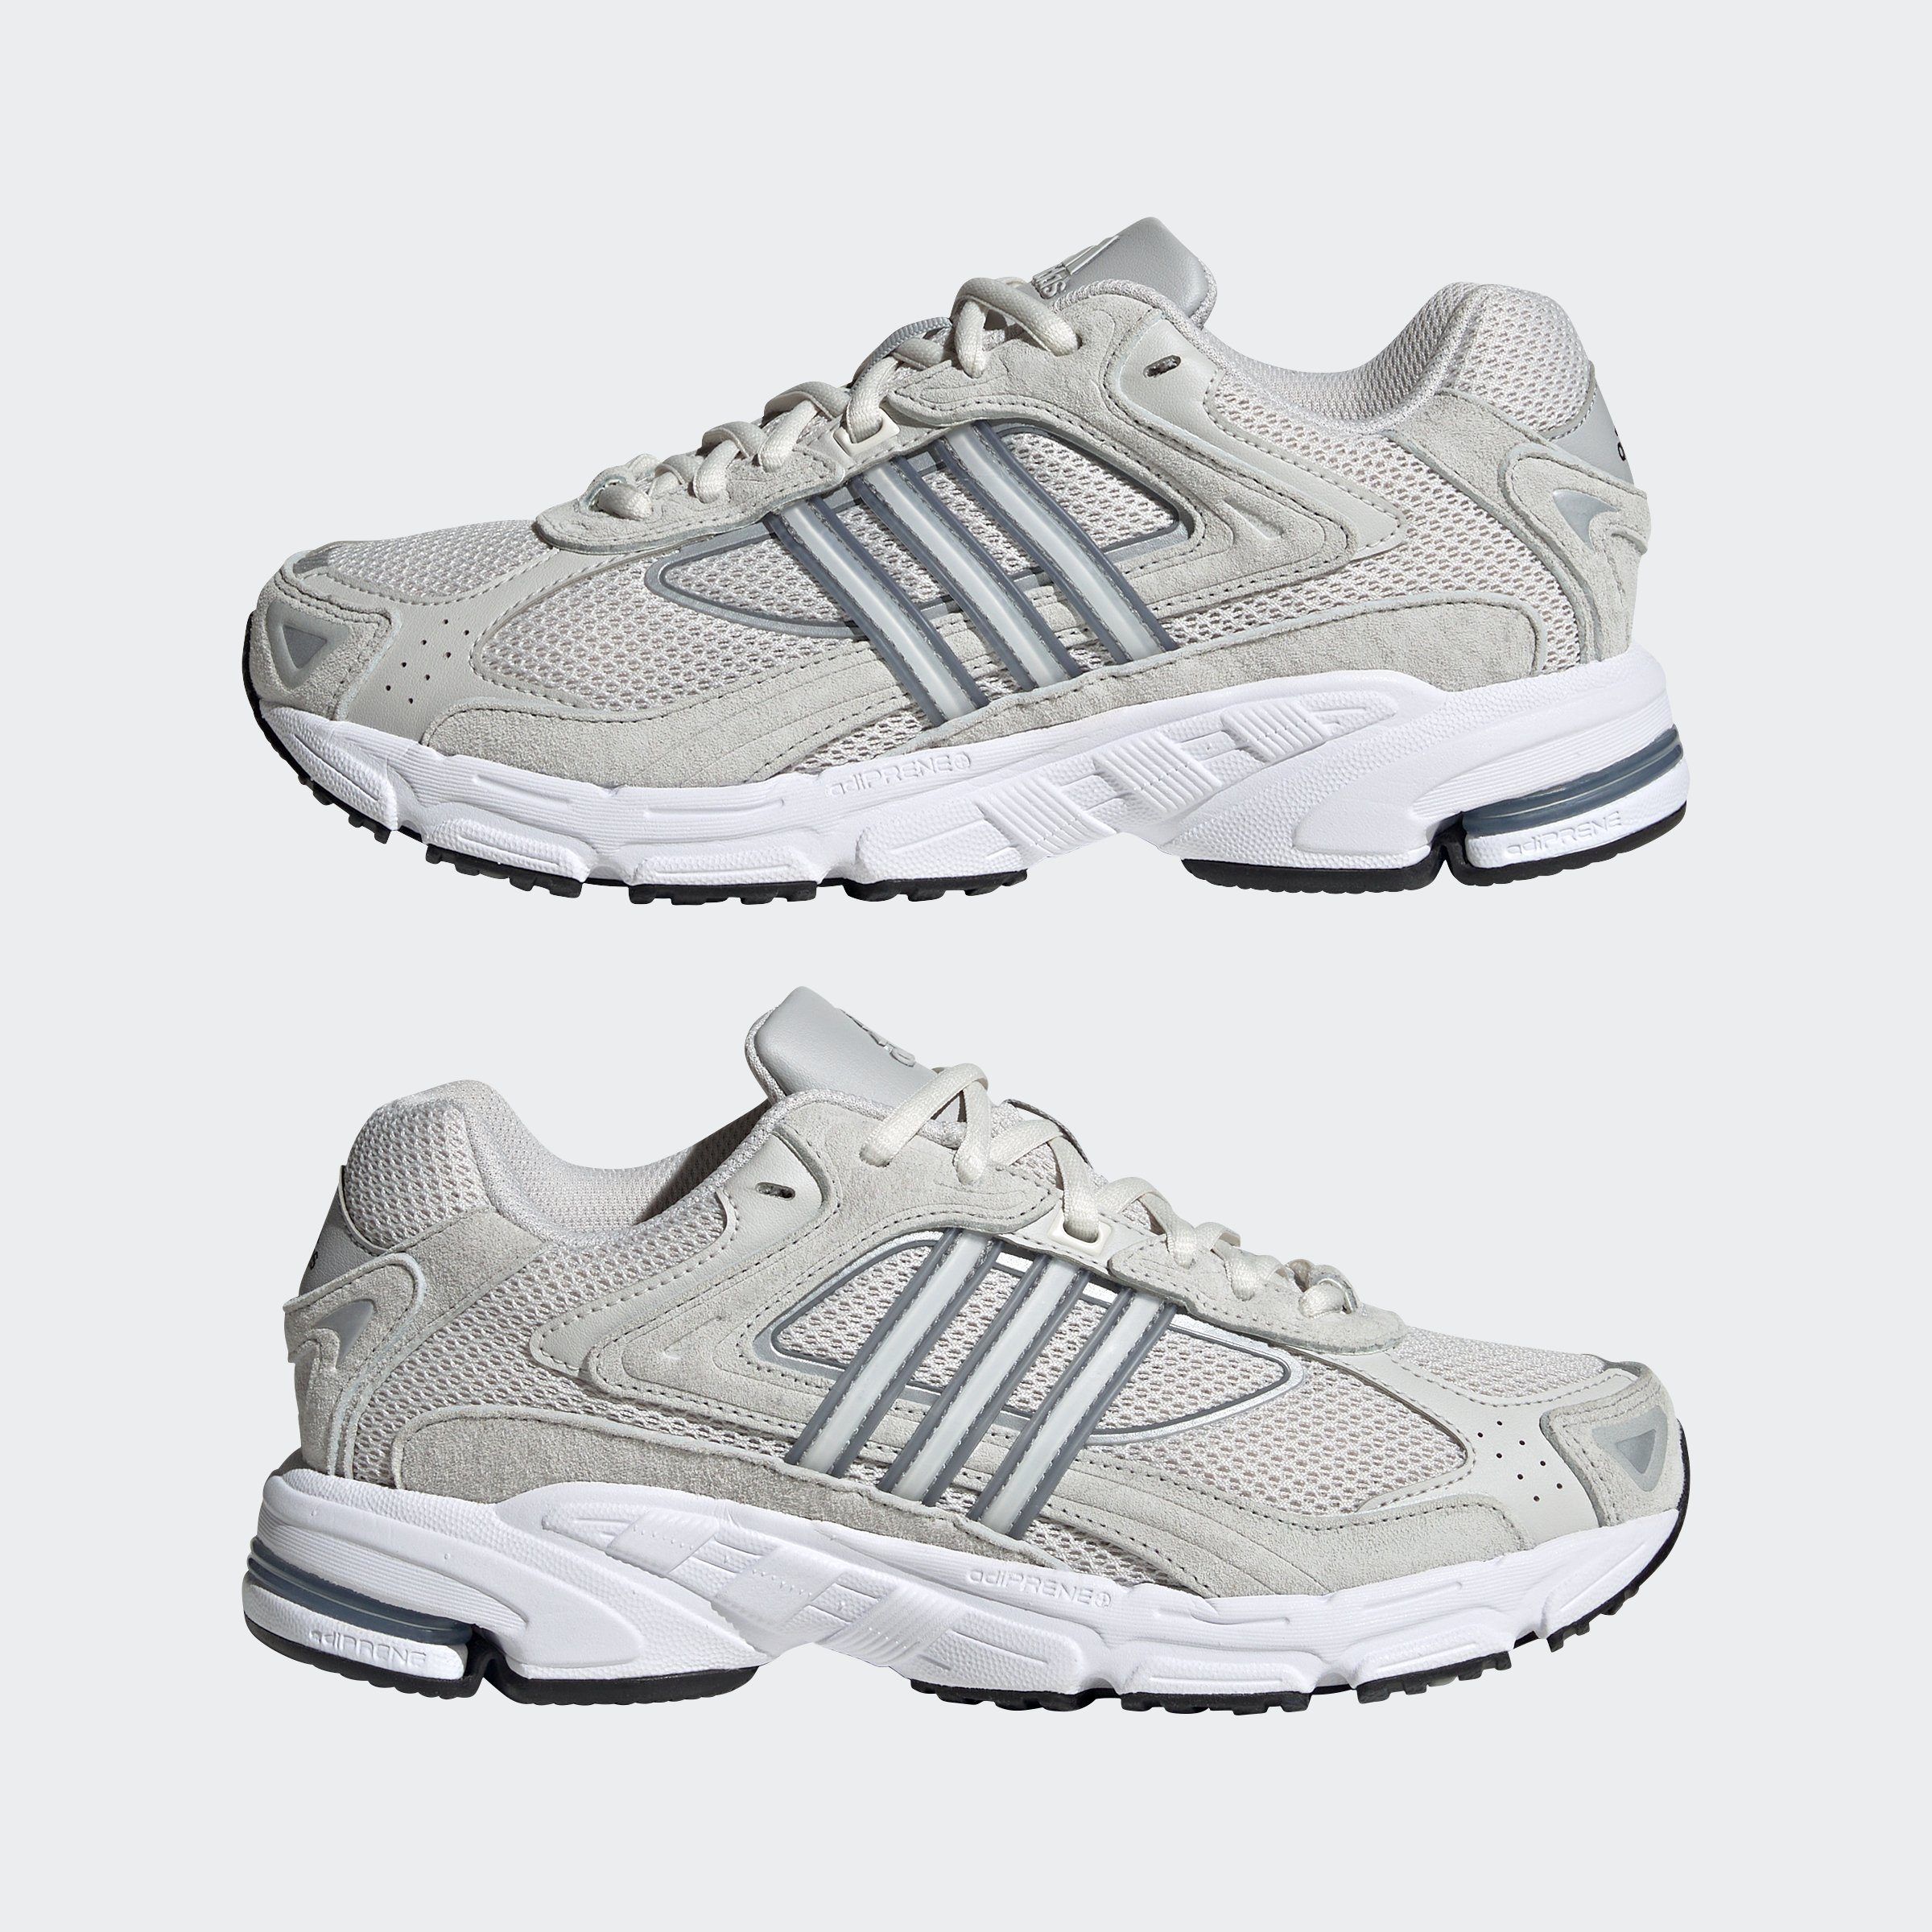 adidas Originals RESPONSE CL Sneaker Two / Grey One / Grey Grey